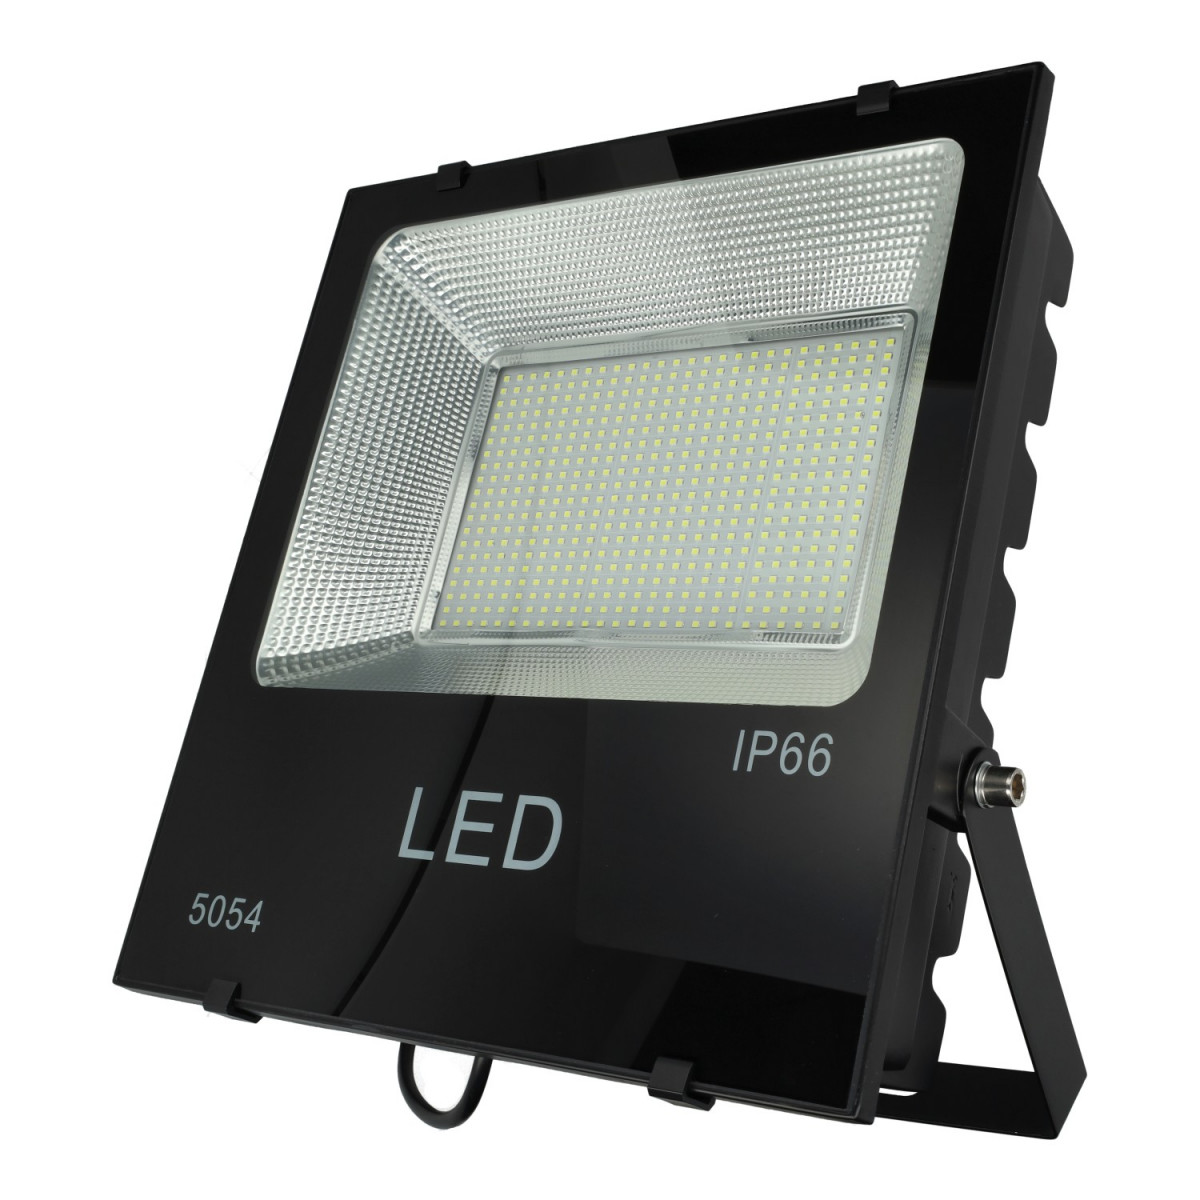 Proiettore LED 200W smd piatto, luce bianca, al miglior prezzo